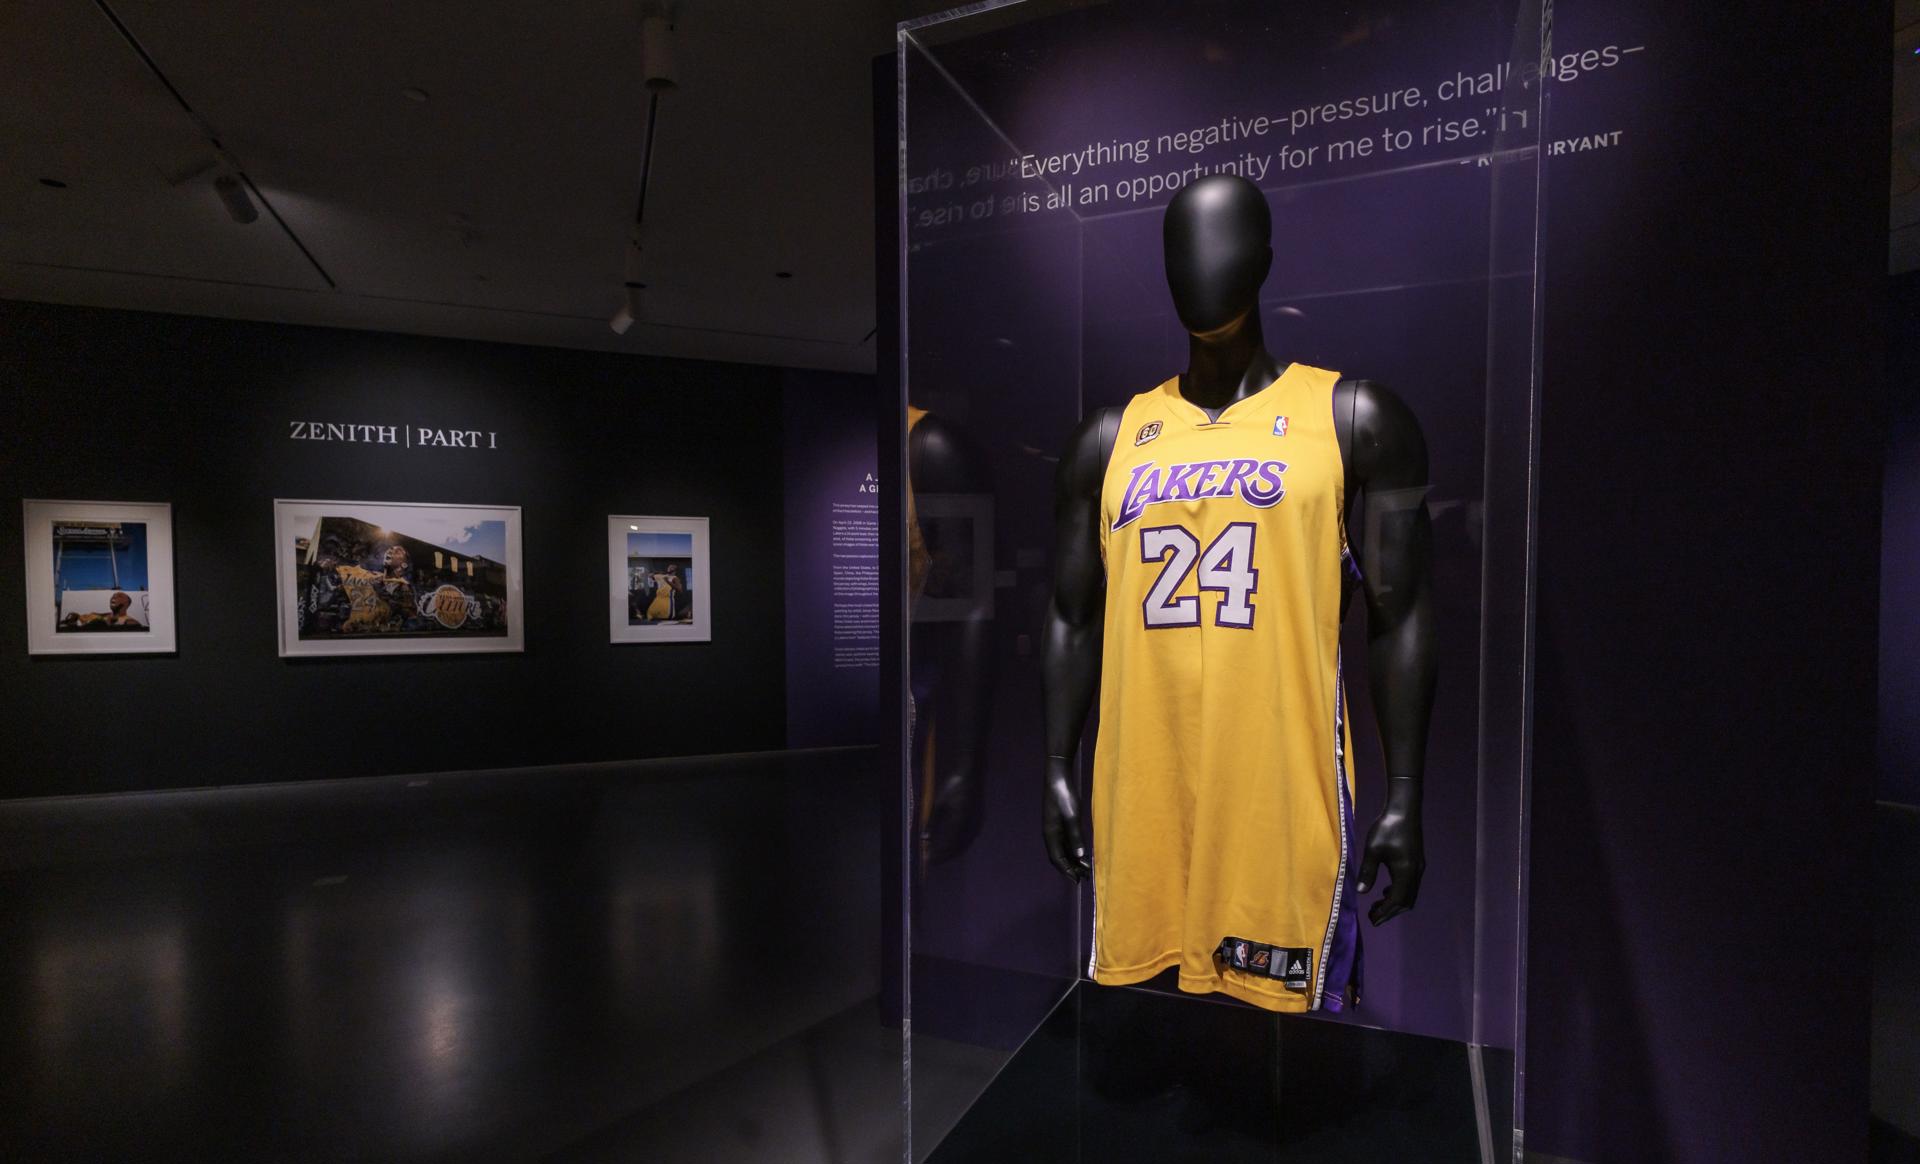 Vista de una camiseta usada por la estrella de la NBA Kobe Bryant en 25 juegos durante la temporada 2007-2008, el 1 de febrero de 2023, subastada Sotheby's en Nueva York (EE.UU.). EFE/Justin Lane